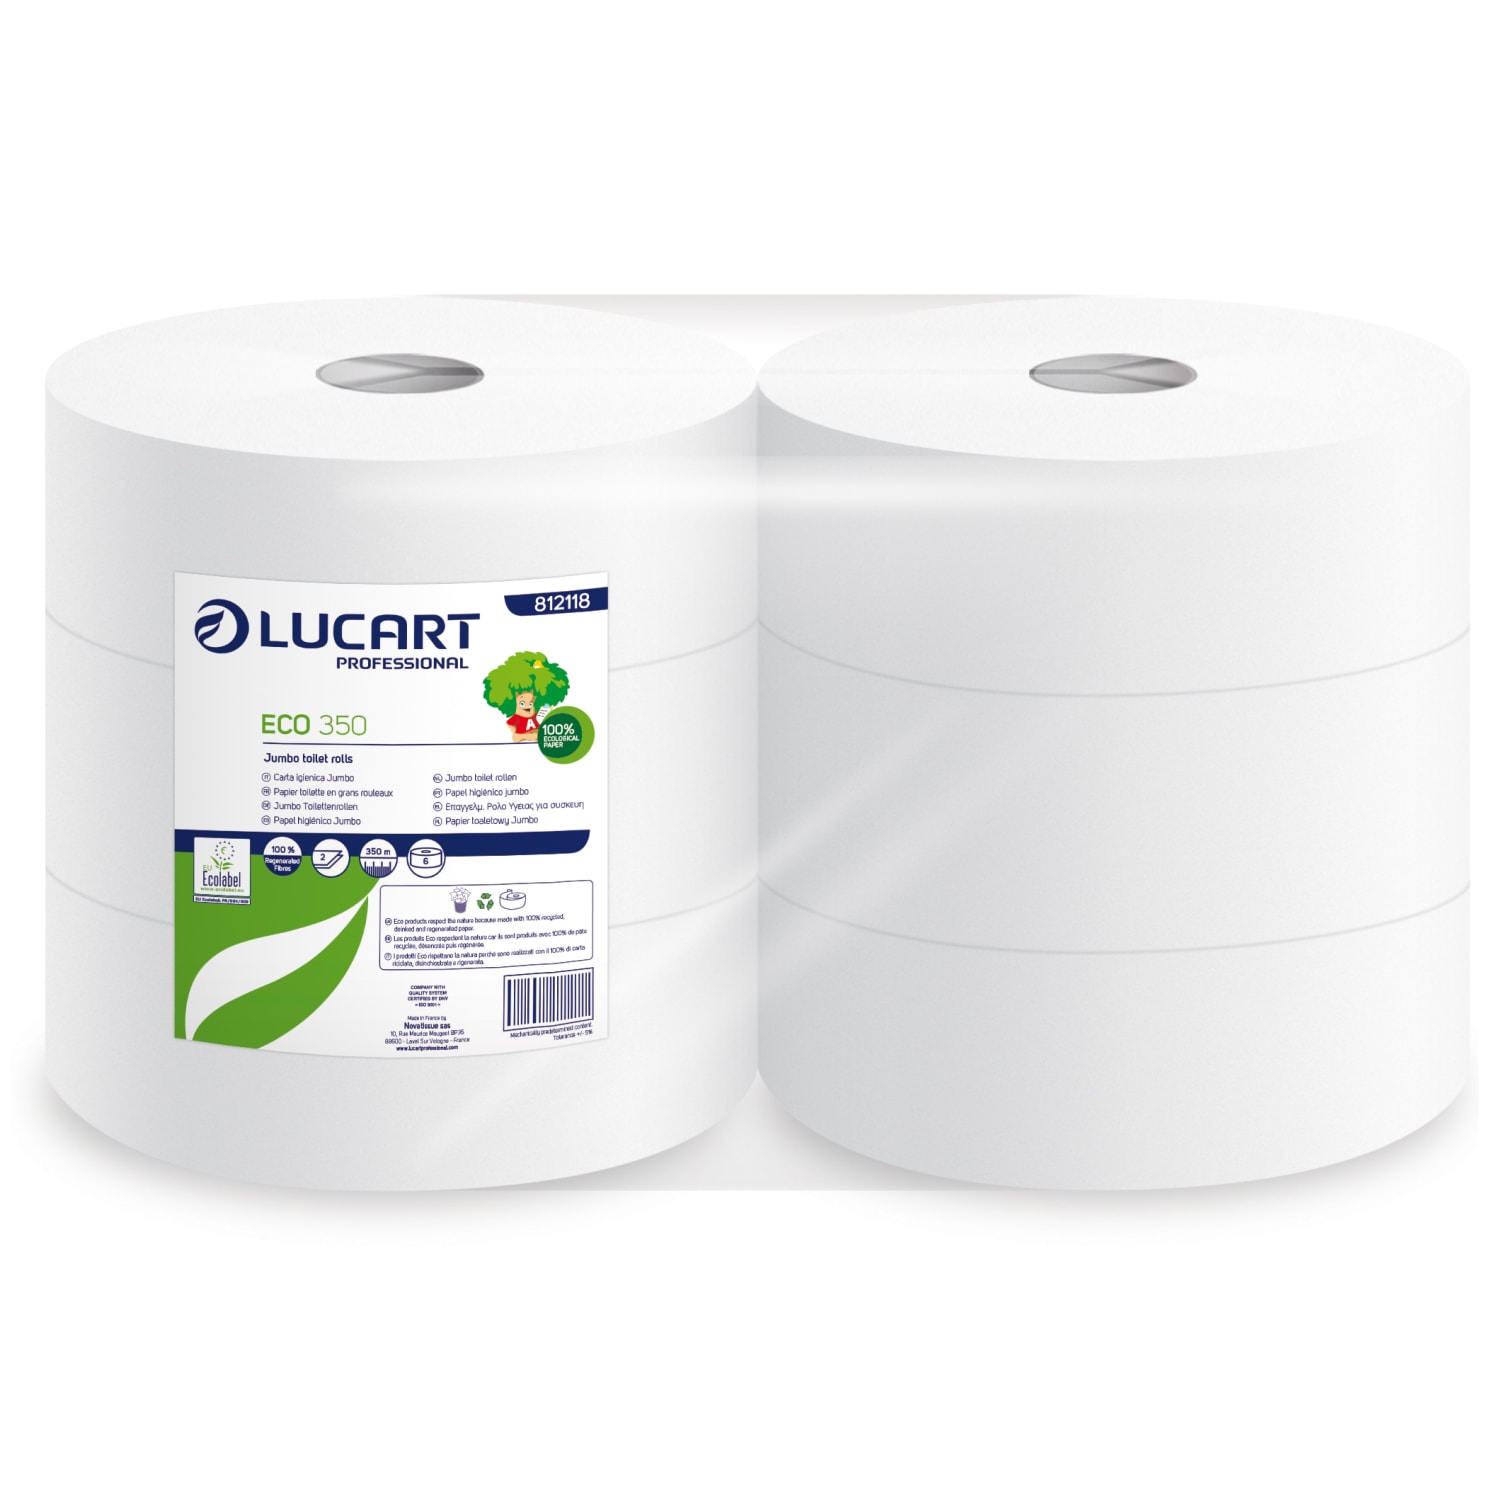 Papier toilette rouleau géant blanc 2 plis 350m prédécoupé 8,5 x 24 cm certifié Ecolabel photo du produit